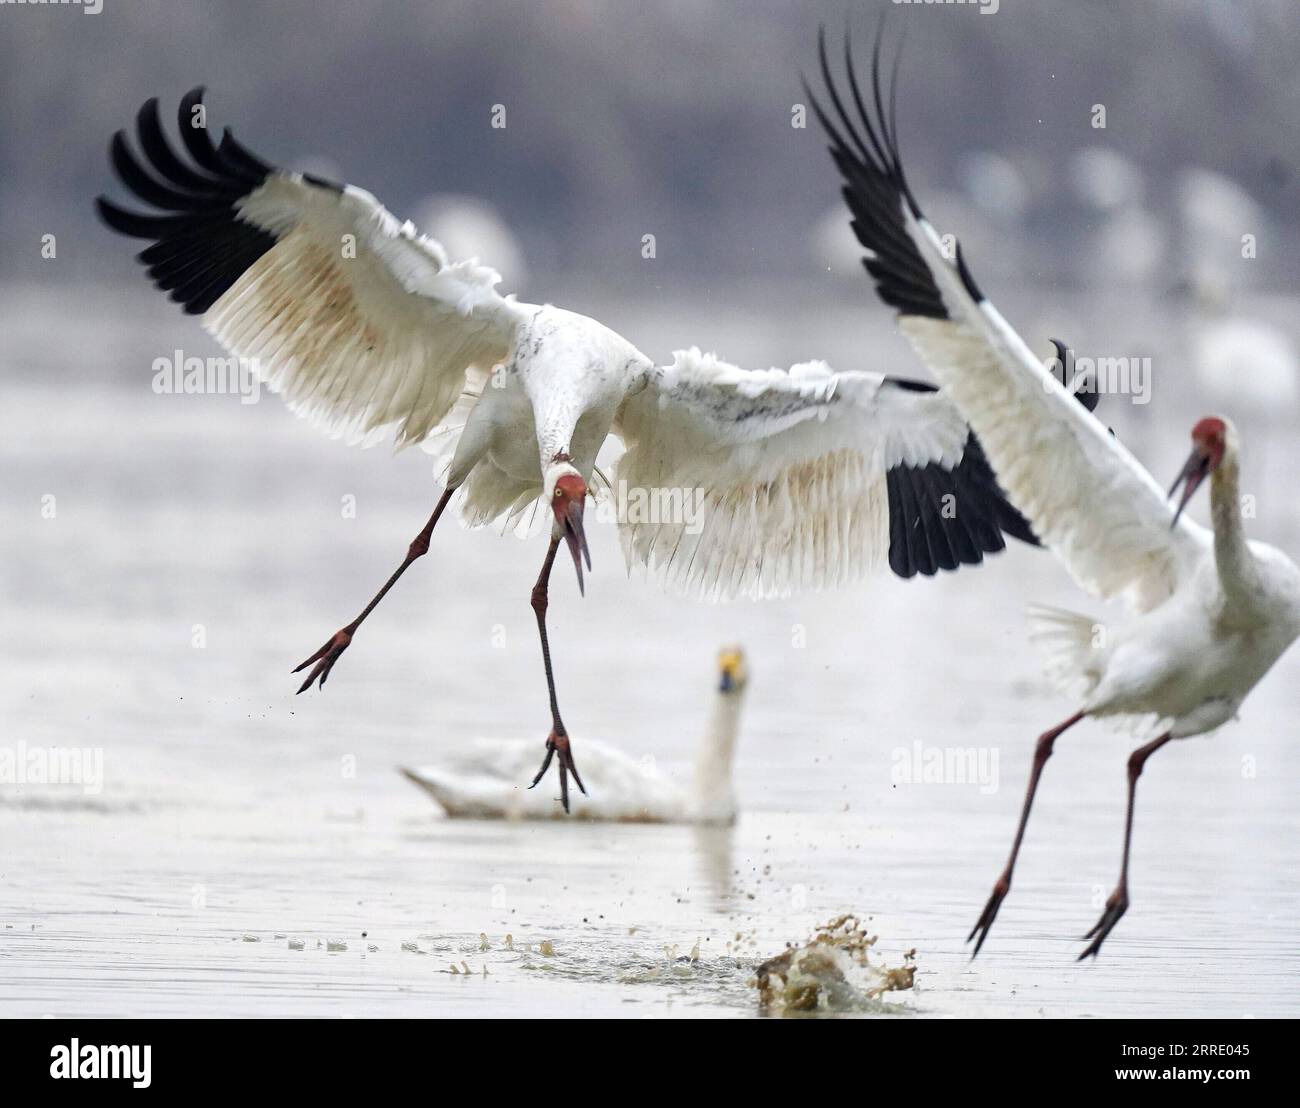 220115 -- NANCHANG, 15. Januar 2022 -- Weiße Kraniche tummeln sich im Nanchang Five Stars Siberian Cranes Sanctuary am Poyang Lake in Nanchang, Ostchinesische Provinz Jiangxi, 1. Januar 2022. Der Poyang Lake, der größte Süßwassersee des Landes, ist ein wichtiger Überwinterungsort für Zugvögel. Um die Futtervorräte für die Vögel zu erhöhen, erließ die lokale Regierung des Yugan County 2021 eine Entschädigungspolitik für Landwirte und reservierte Reis für Zugvögel. Im fünf-Sterne-Sibirischen Kranichheiligtum Nanchang am Poyang-See wurden Kraniche auf einem Lotussee zum Essen angezogen. Der Teich, Initia Stockfoto